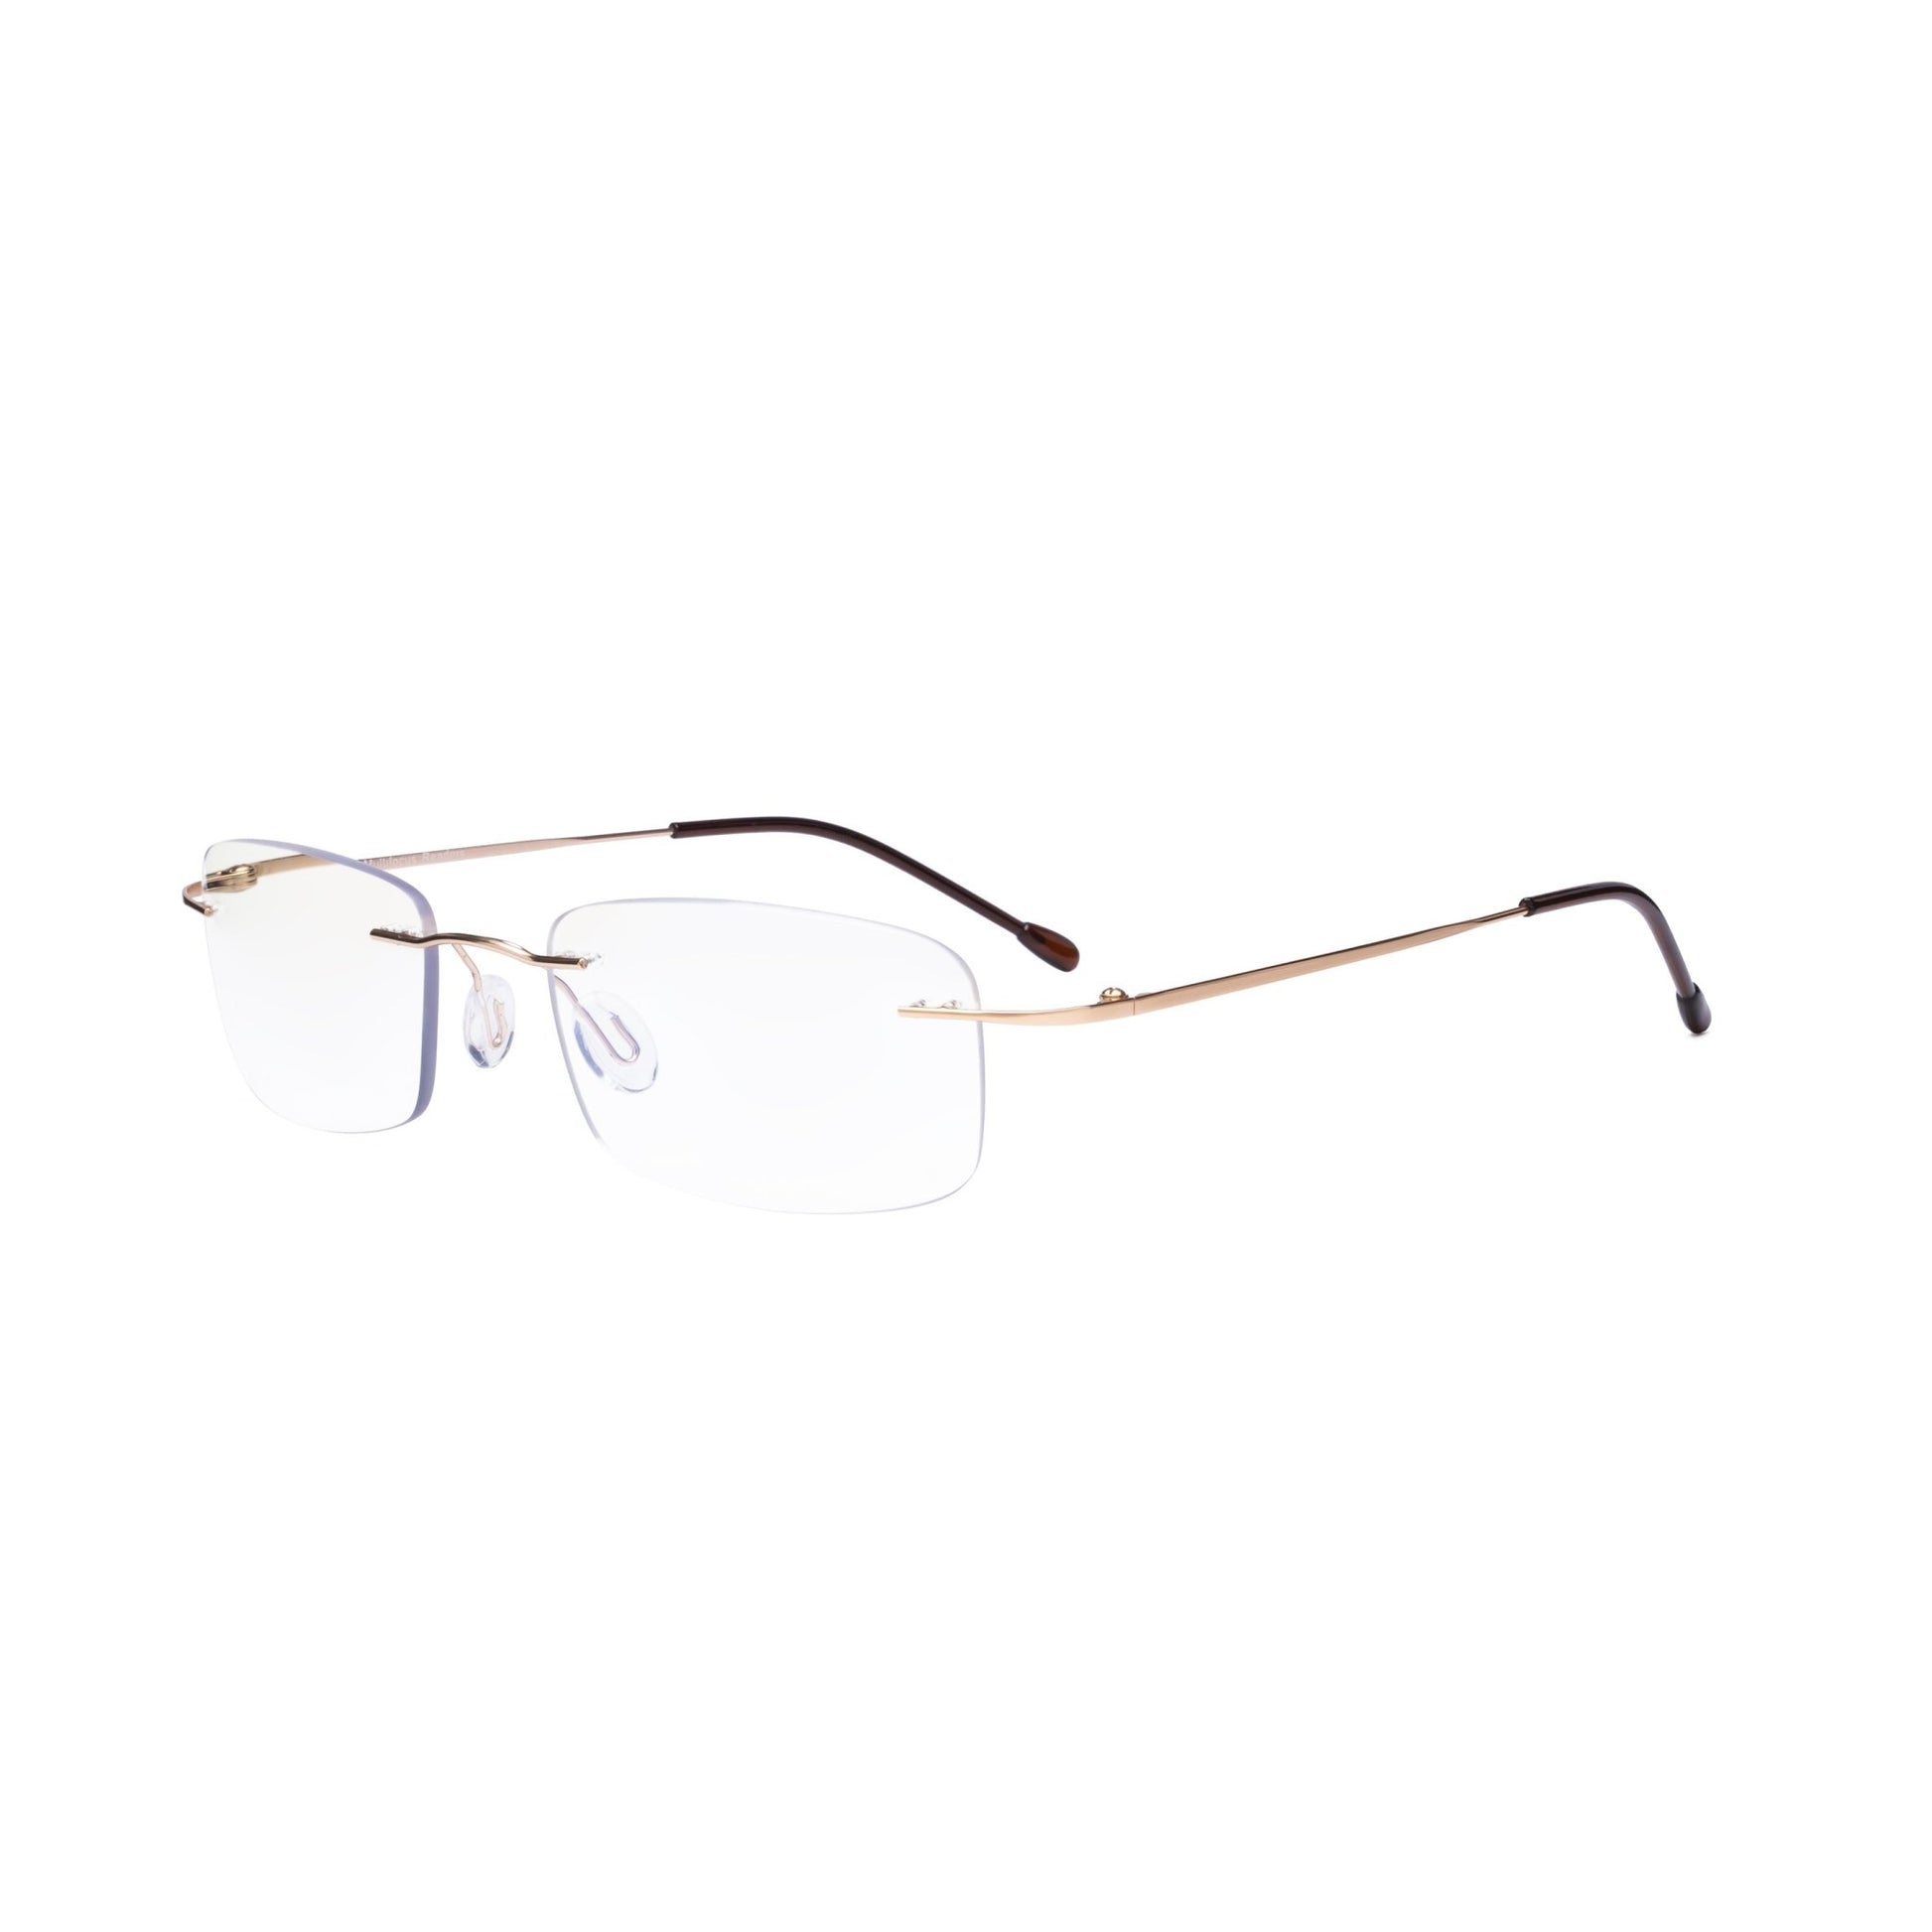 Frameless Progressive Reading Glasses Gold MWK8